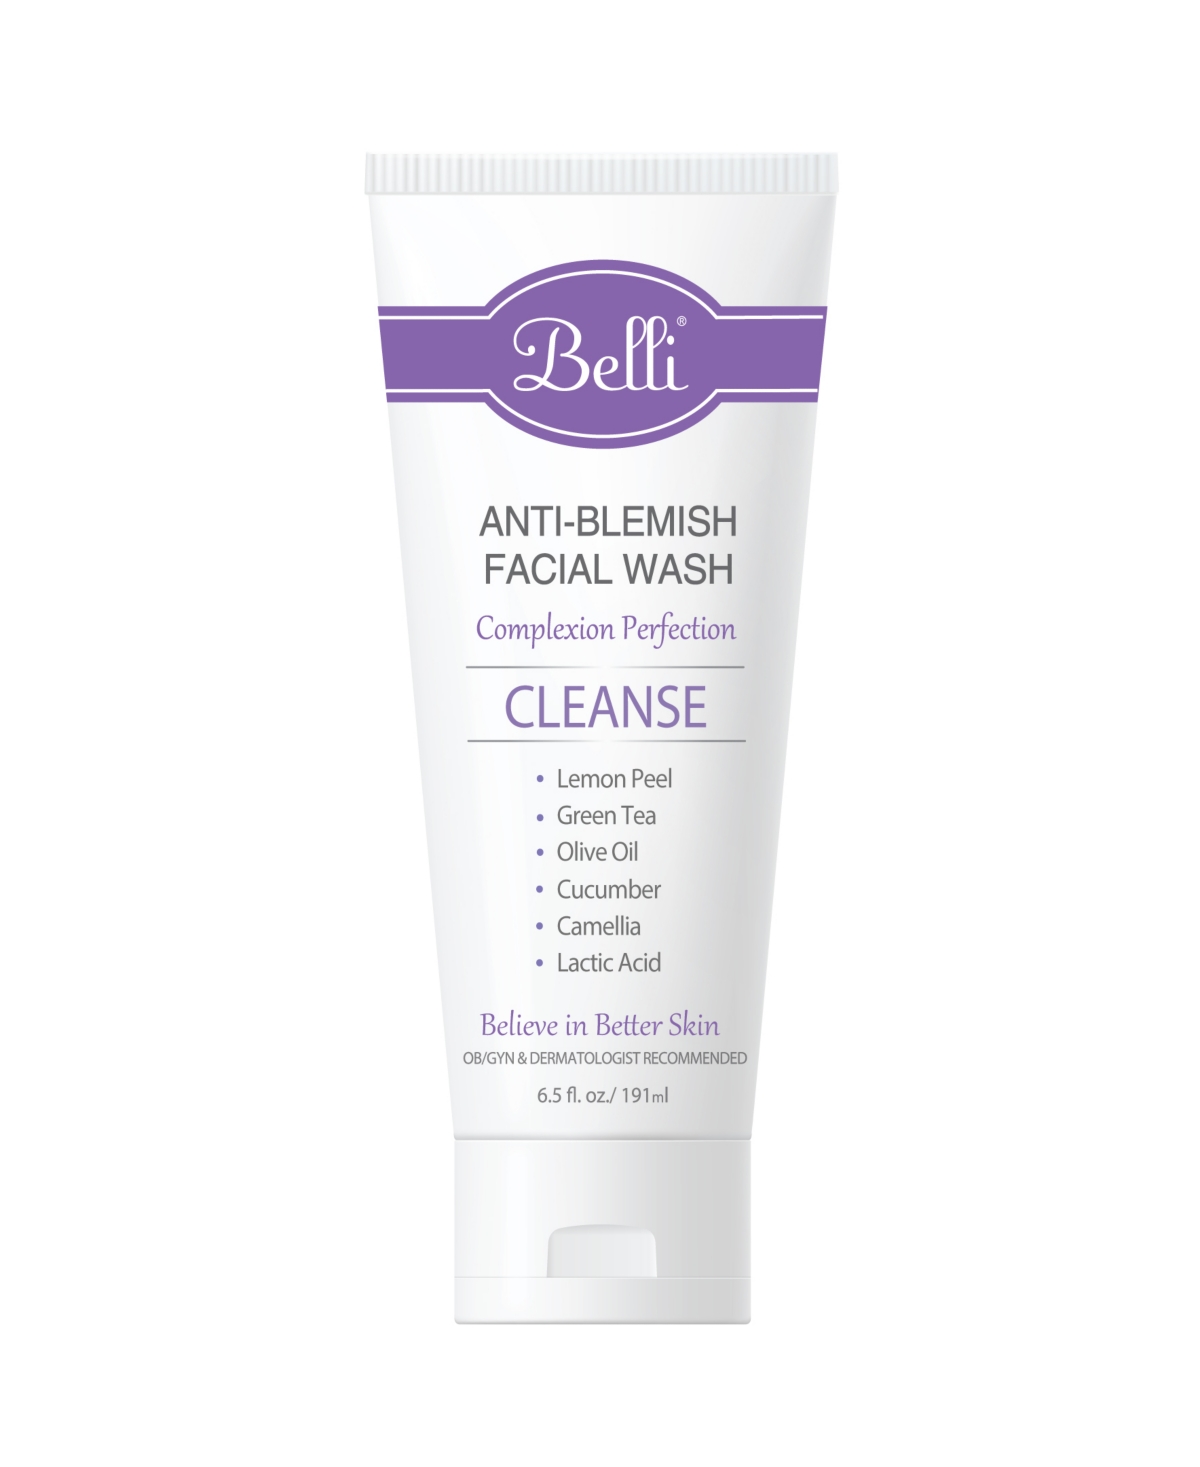 Anti-Blemish Facial Wash, 6.5 oz.